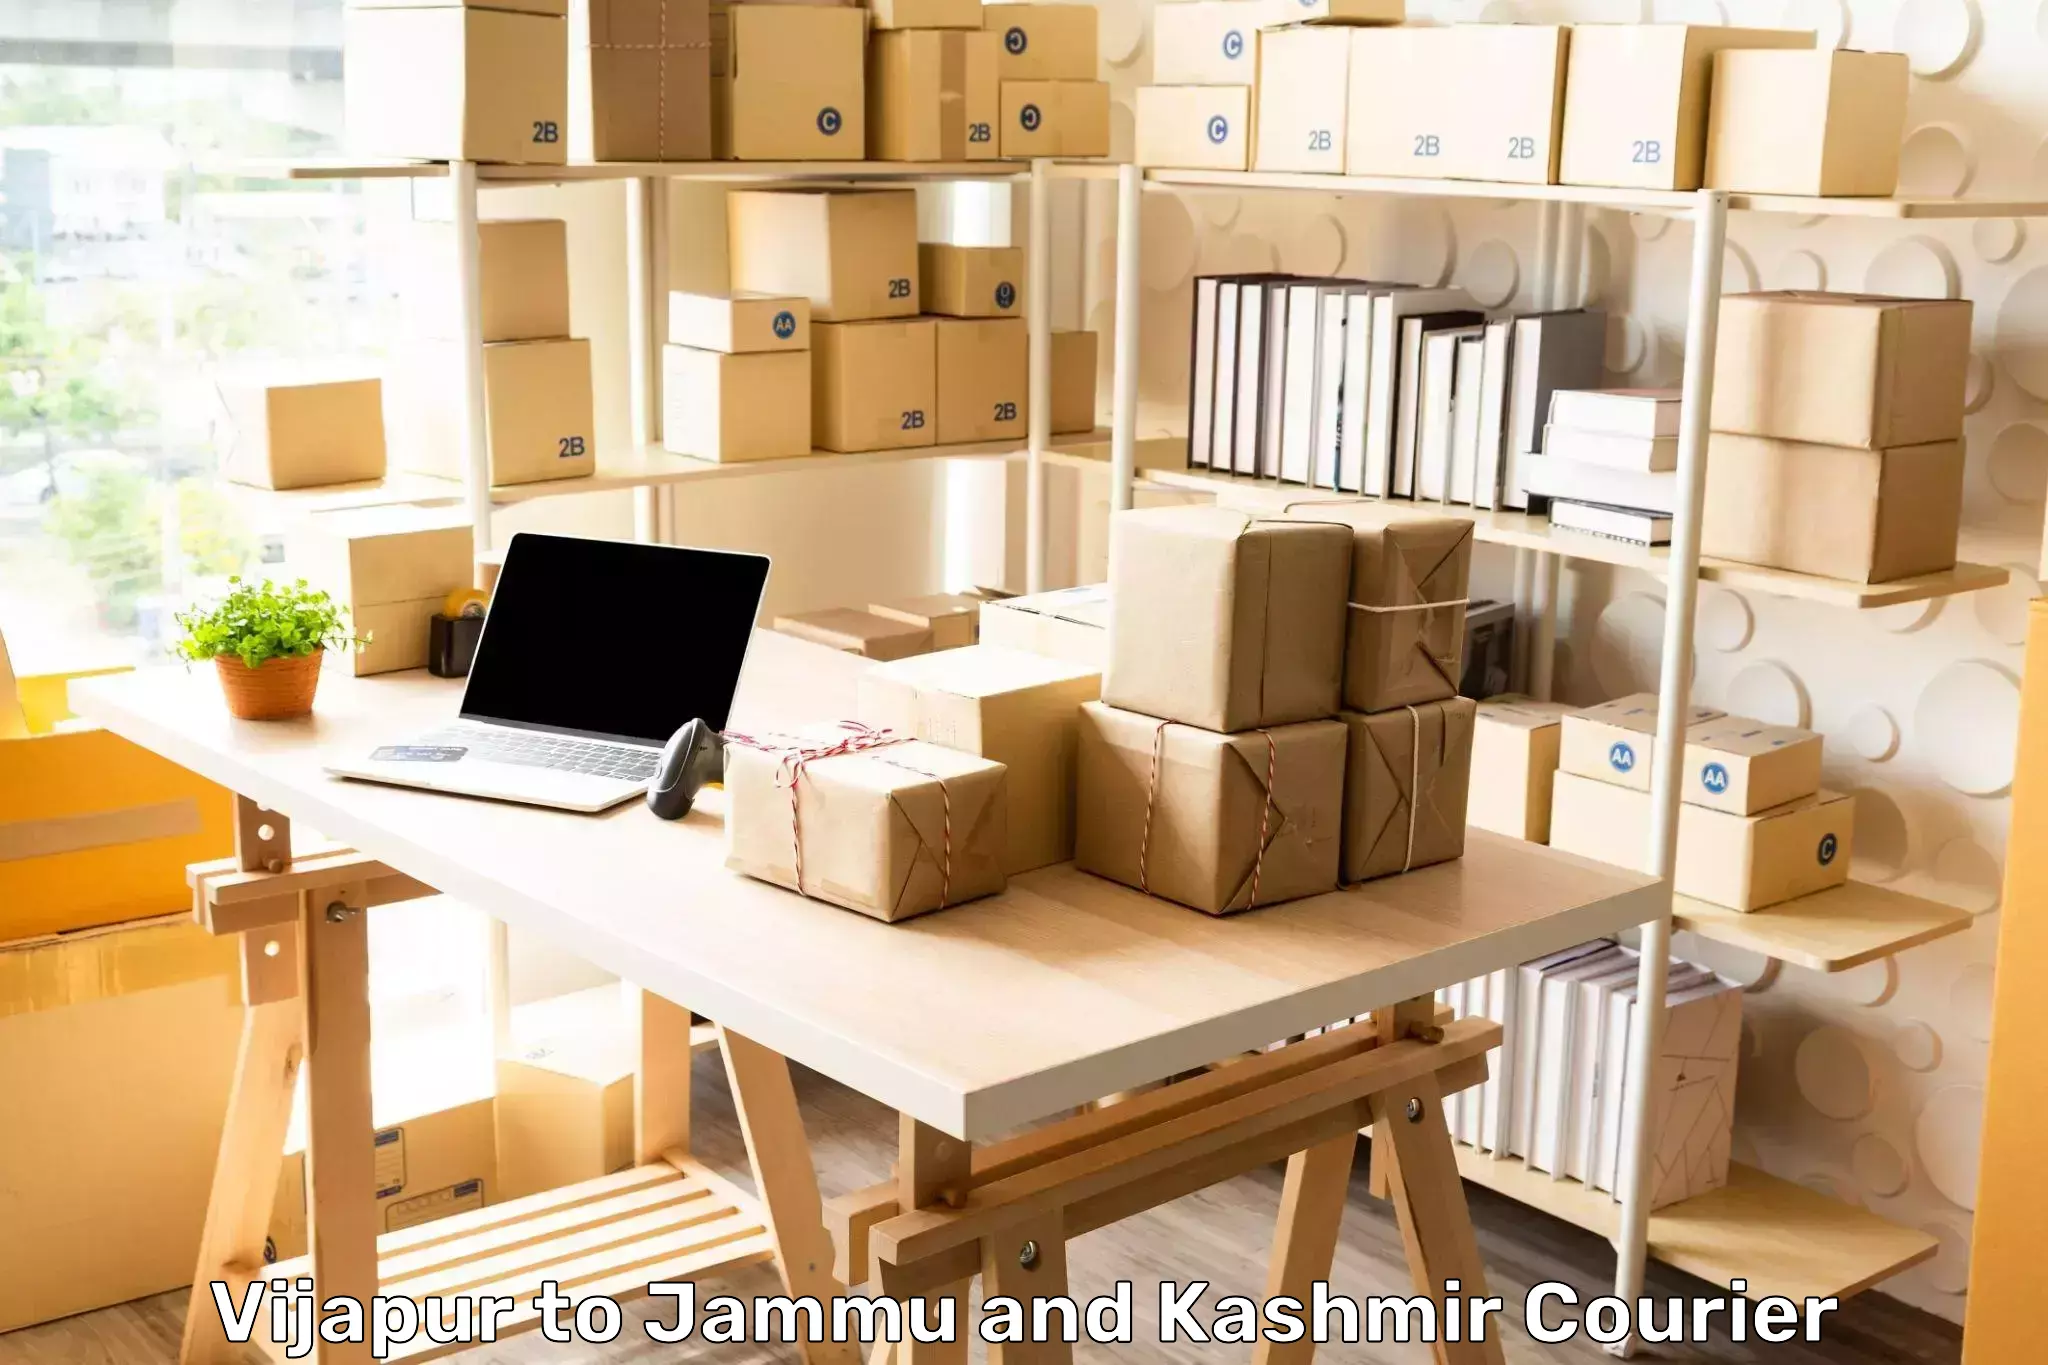 Seamless shipping service Vijapur to University of Jammu